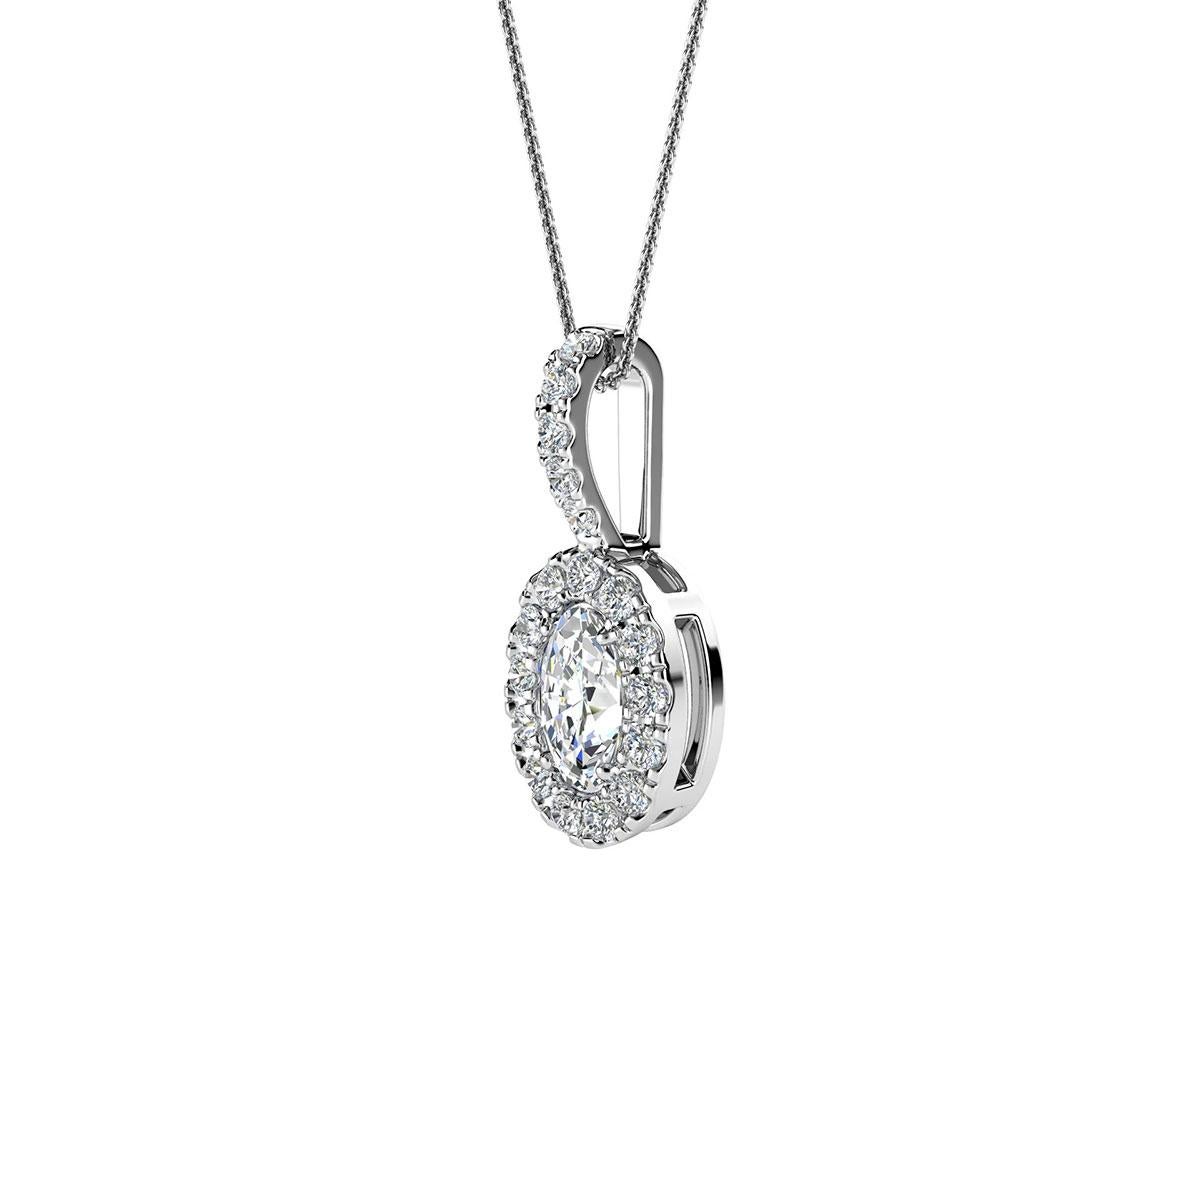 Ce délicat pendentif présente un diamant ovale d'un poids total d'environ 0,23 carat (5 mm x 3 mm) entouré d'un halo de 13 diamants ronds brillants parfaitement assortis d'un poids total d'environ 0,12 carat. Le pendentif mesure 14 mm de long et 6,2